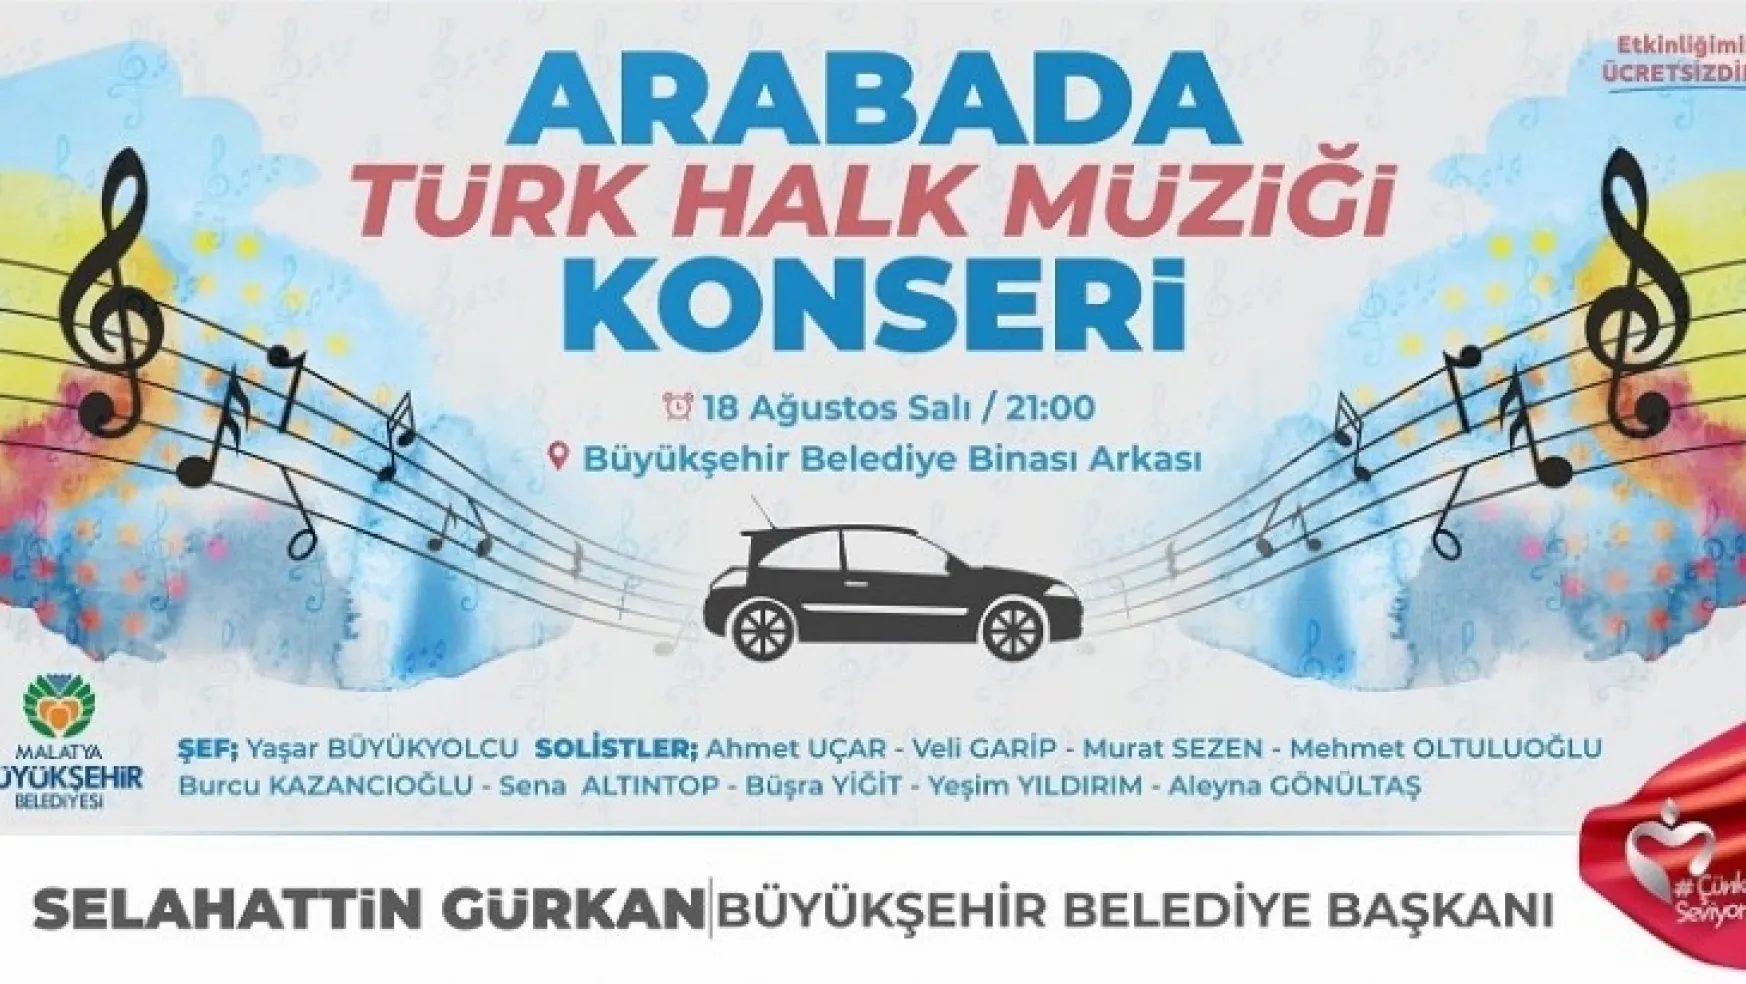 Malatya Büyükşehir Belediyesi Arabada Türk Halk Müziği konseri düzenleniyor